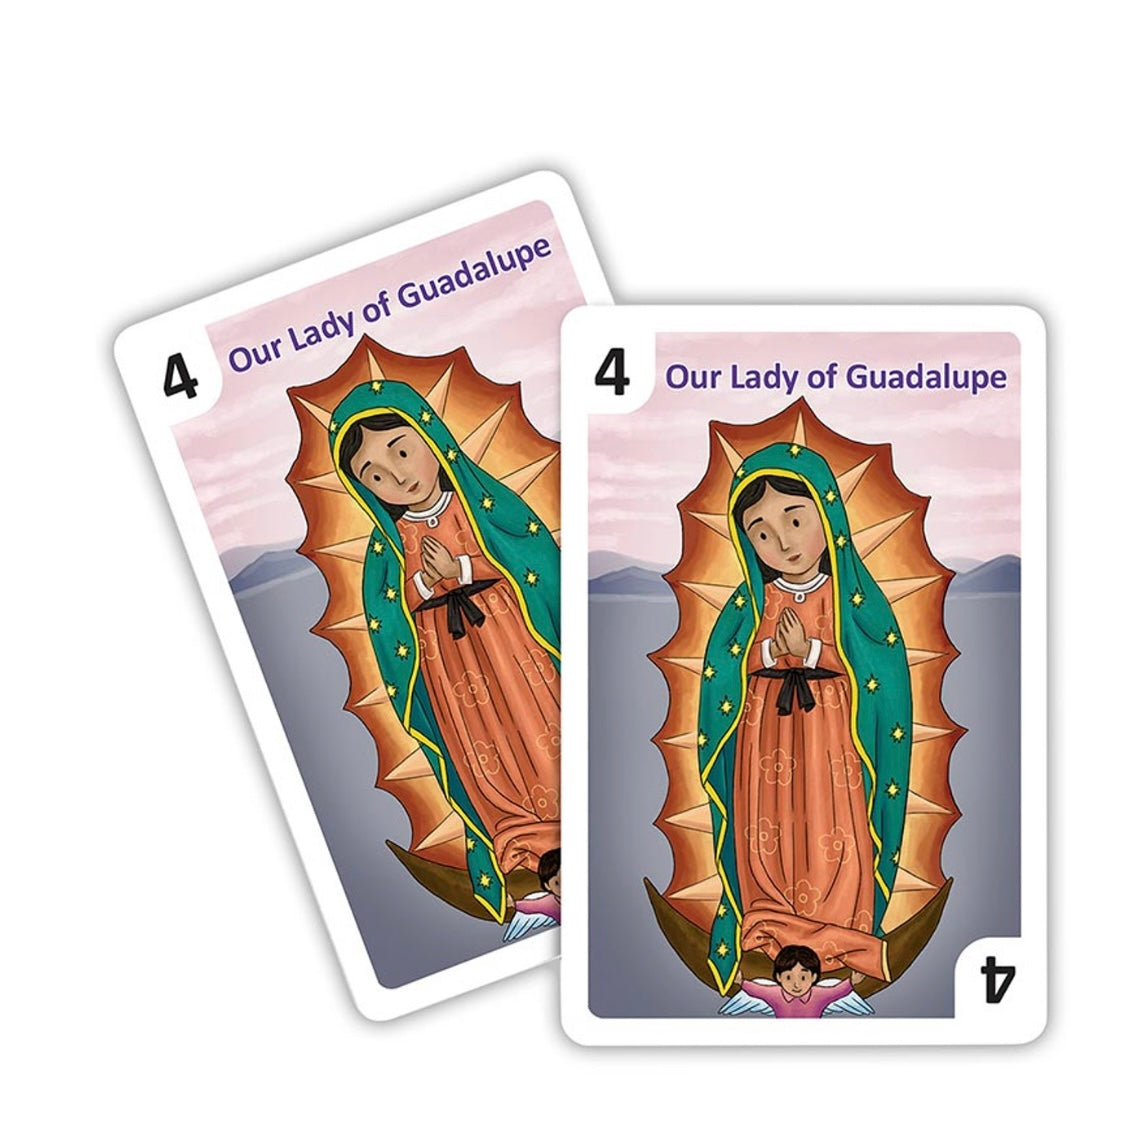 Mini Saints Go Fish Card Game Set